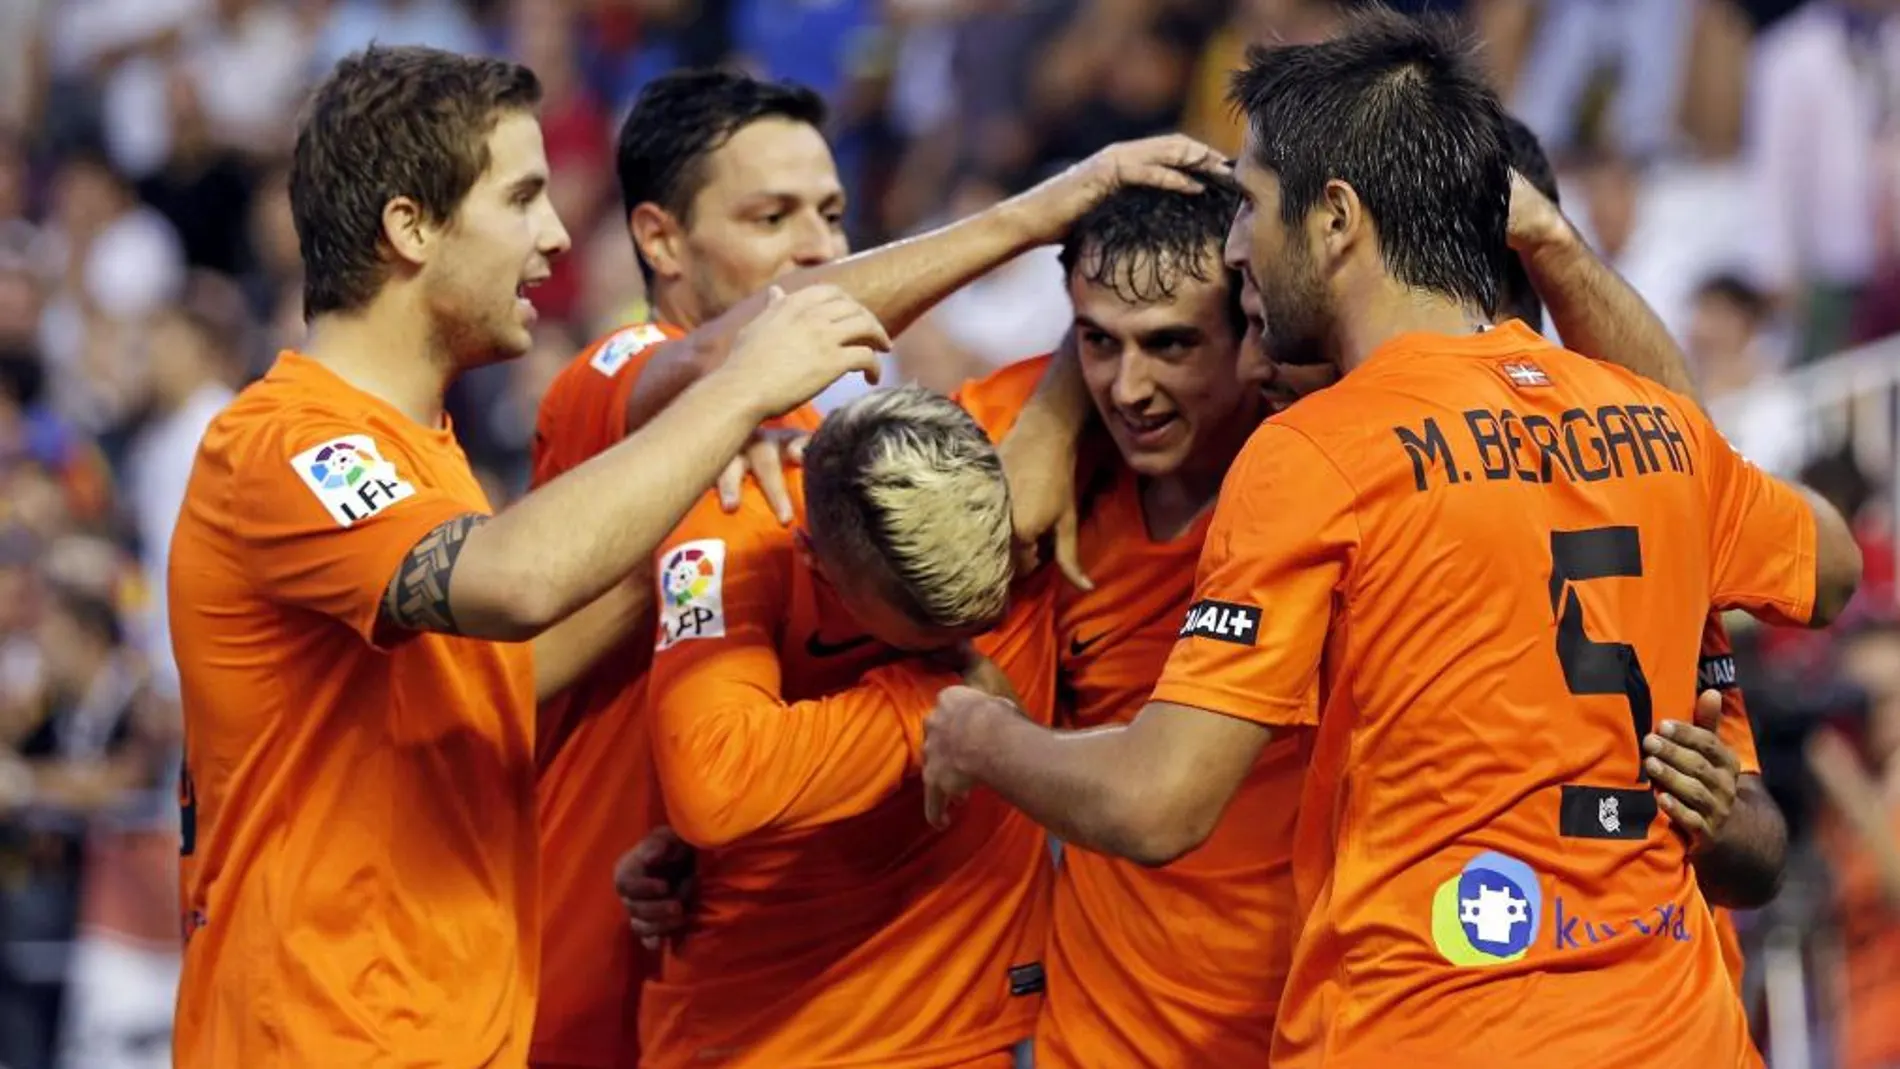 El centrocampista de la Real Sociedad Rubén Pardo (c) celebra con sus compañeros el gol que acaba de marcar, el segundo de su equipo